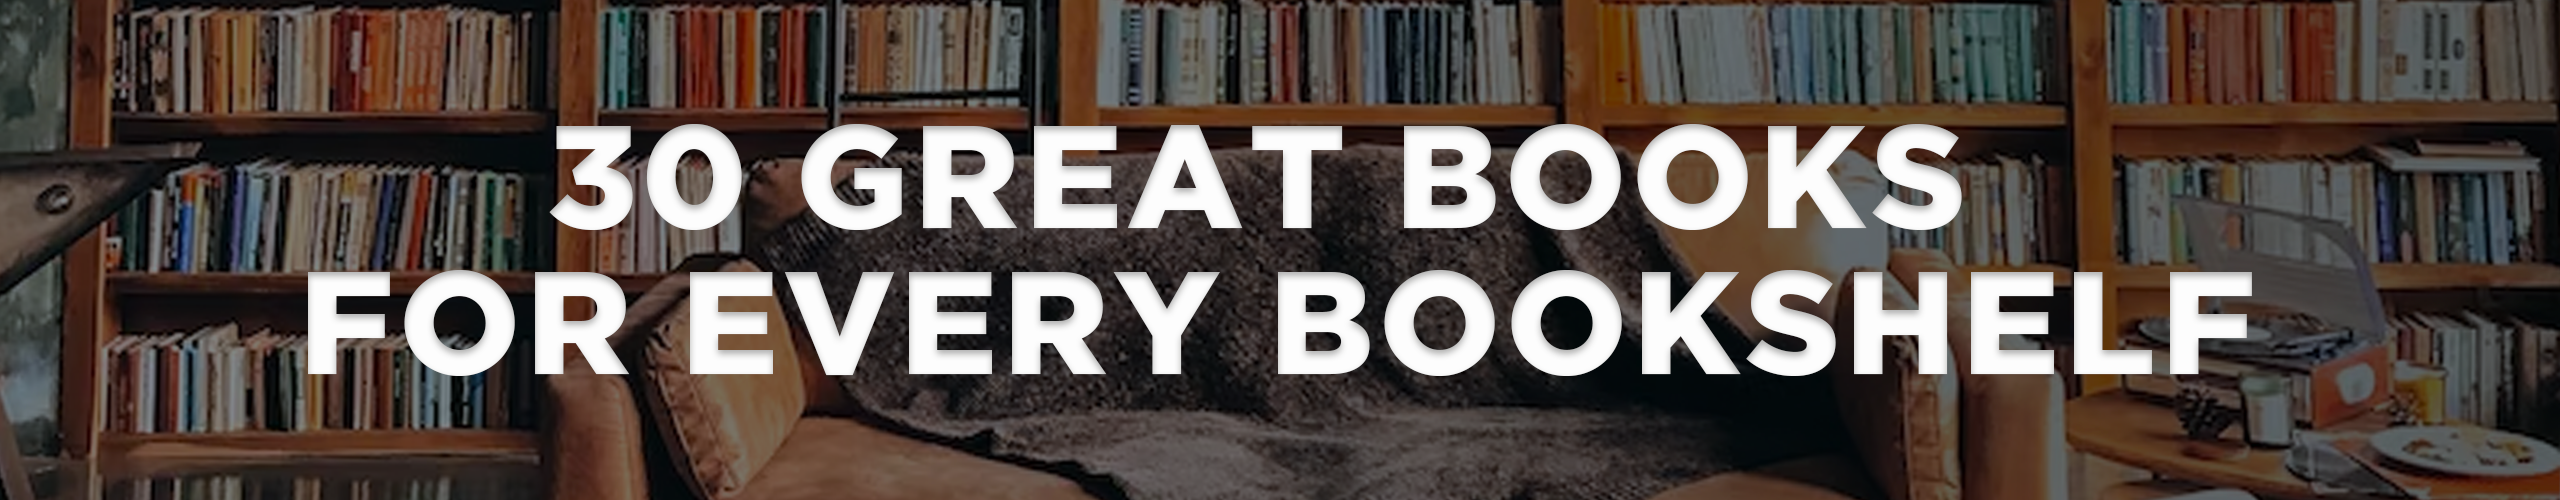 books-for-every-bookshelf